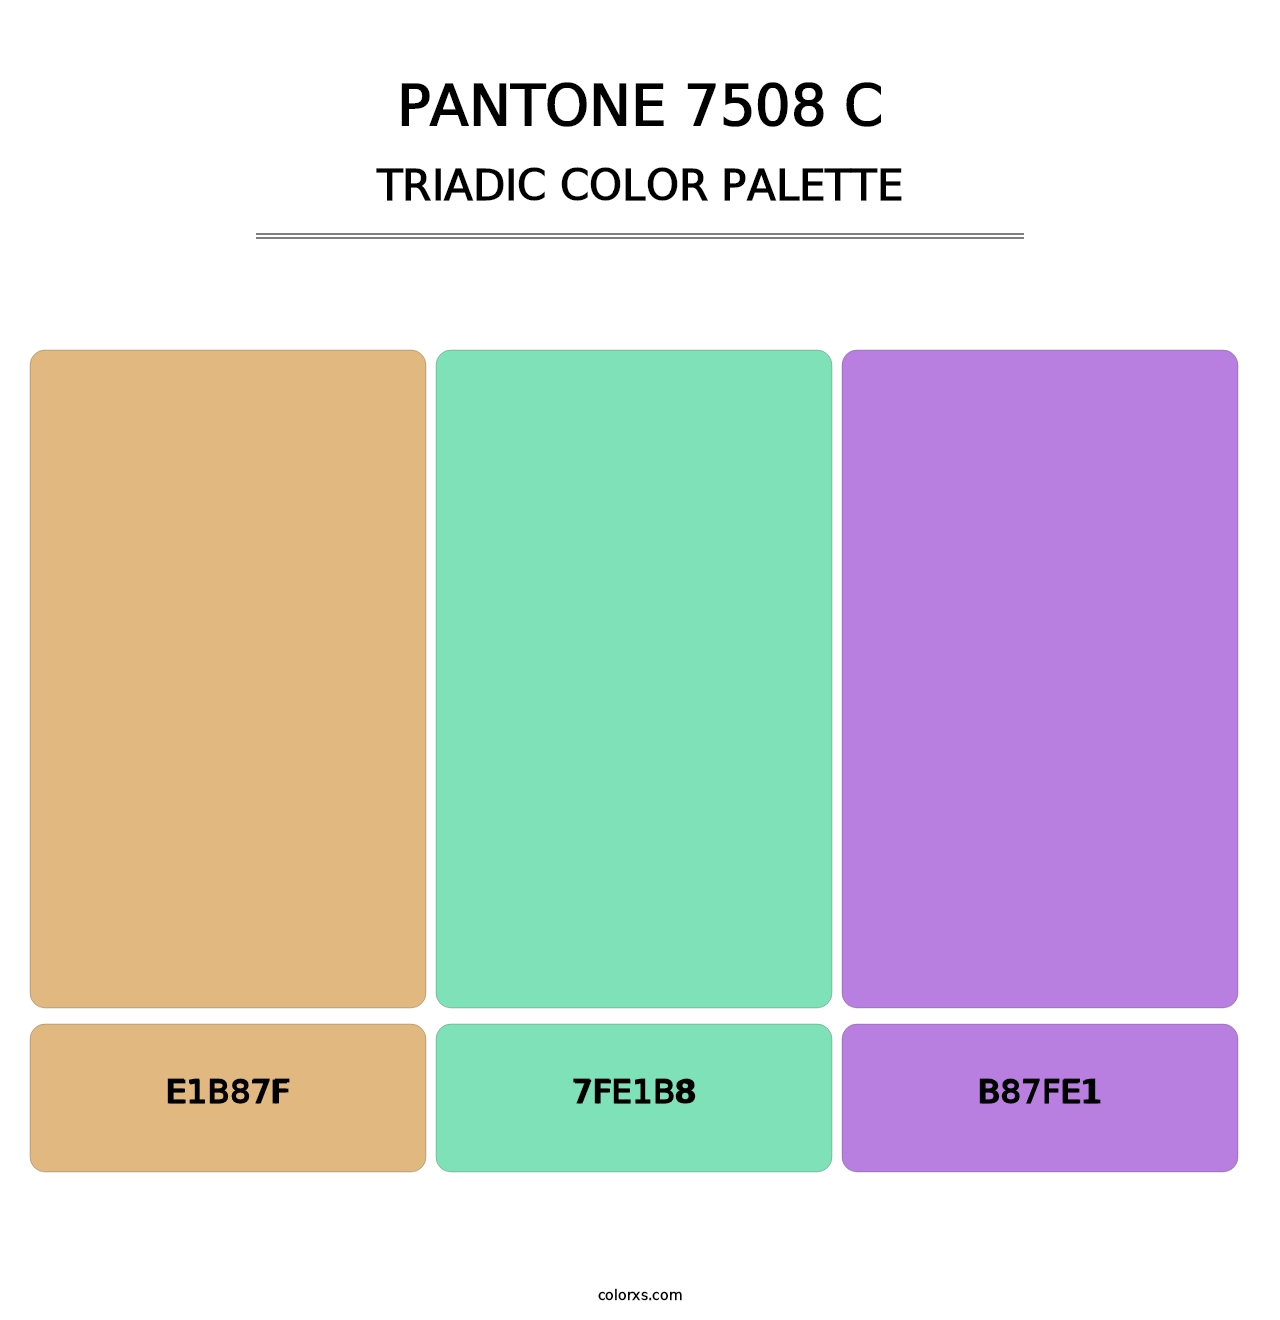 PANTONE 7508 C - Triadic Color Palette